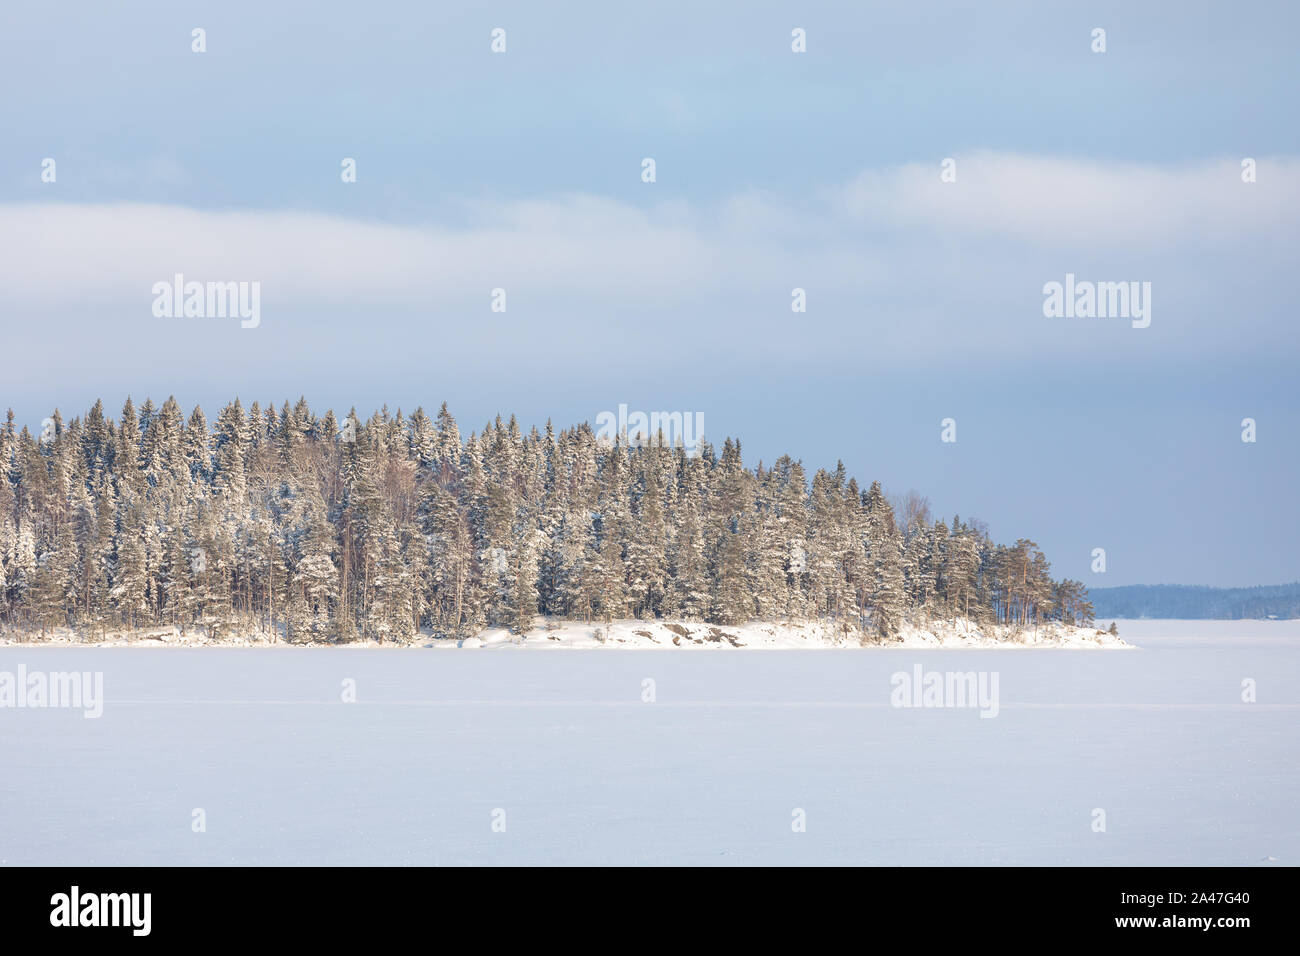 Paysage du lac et de la forêt à l'île de jour d'hiver Banque D'Images